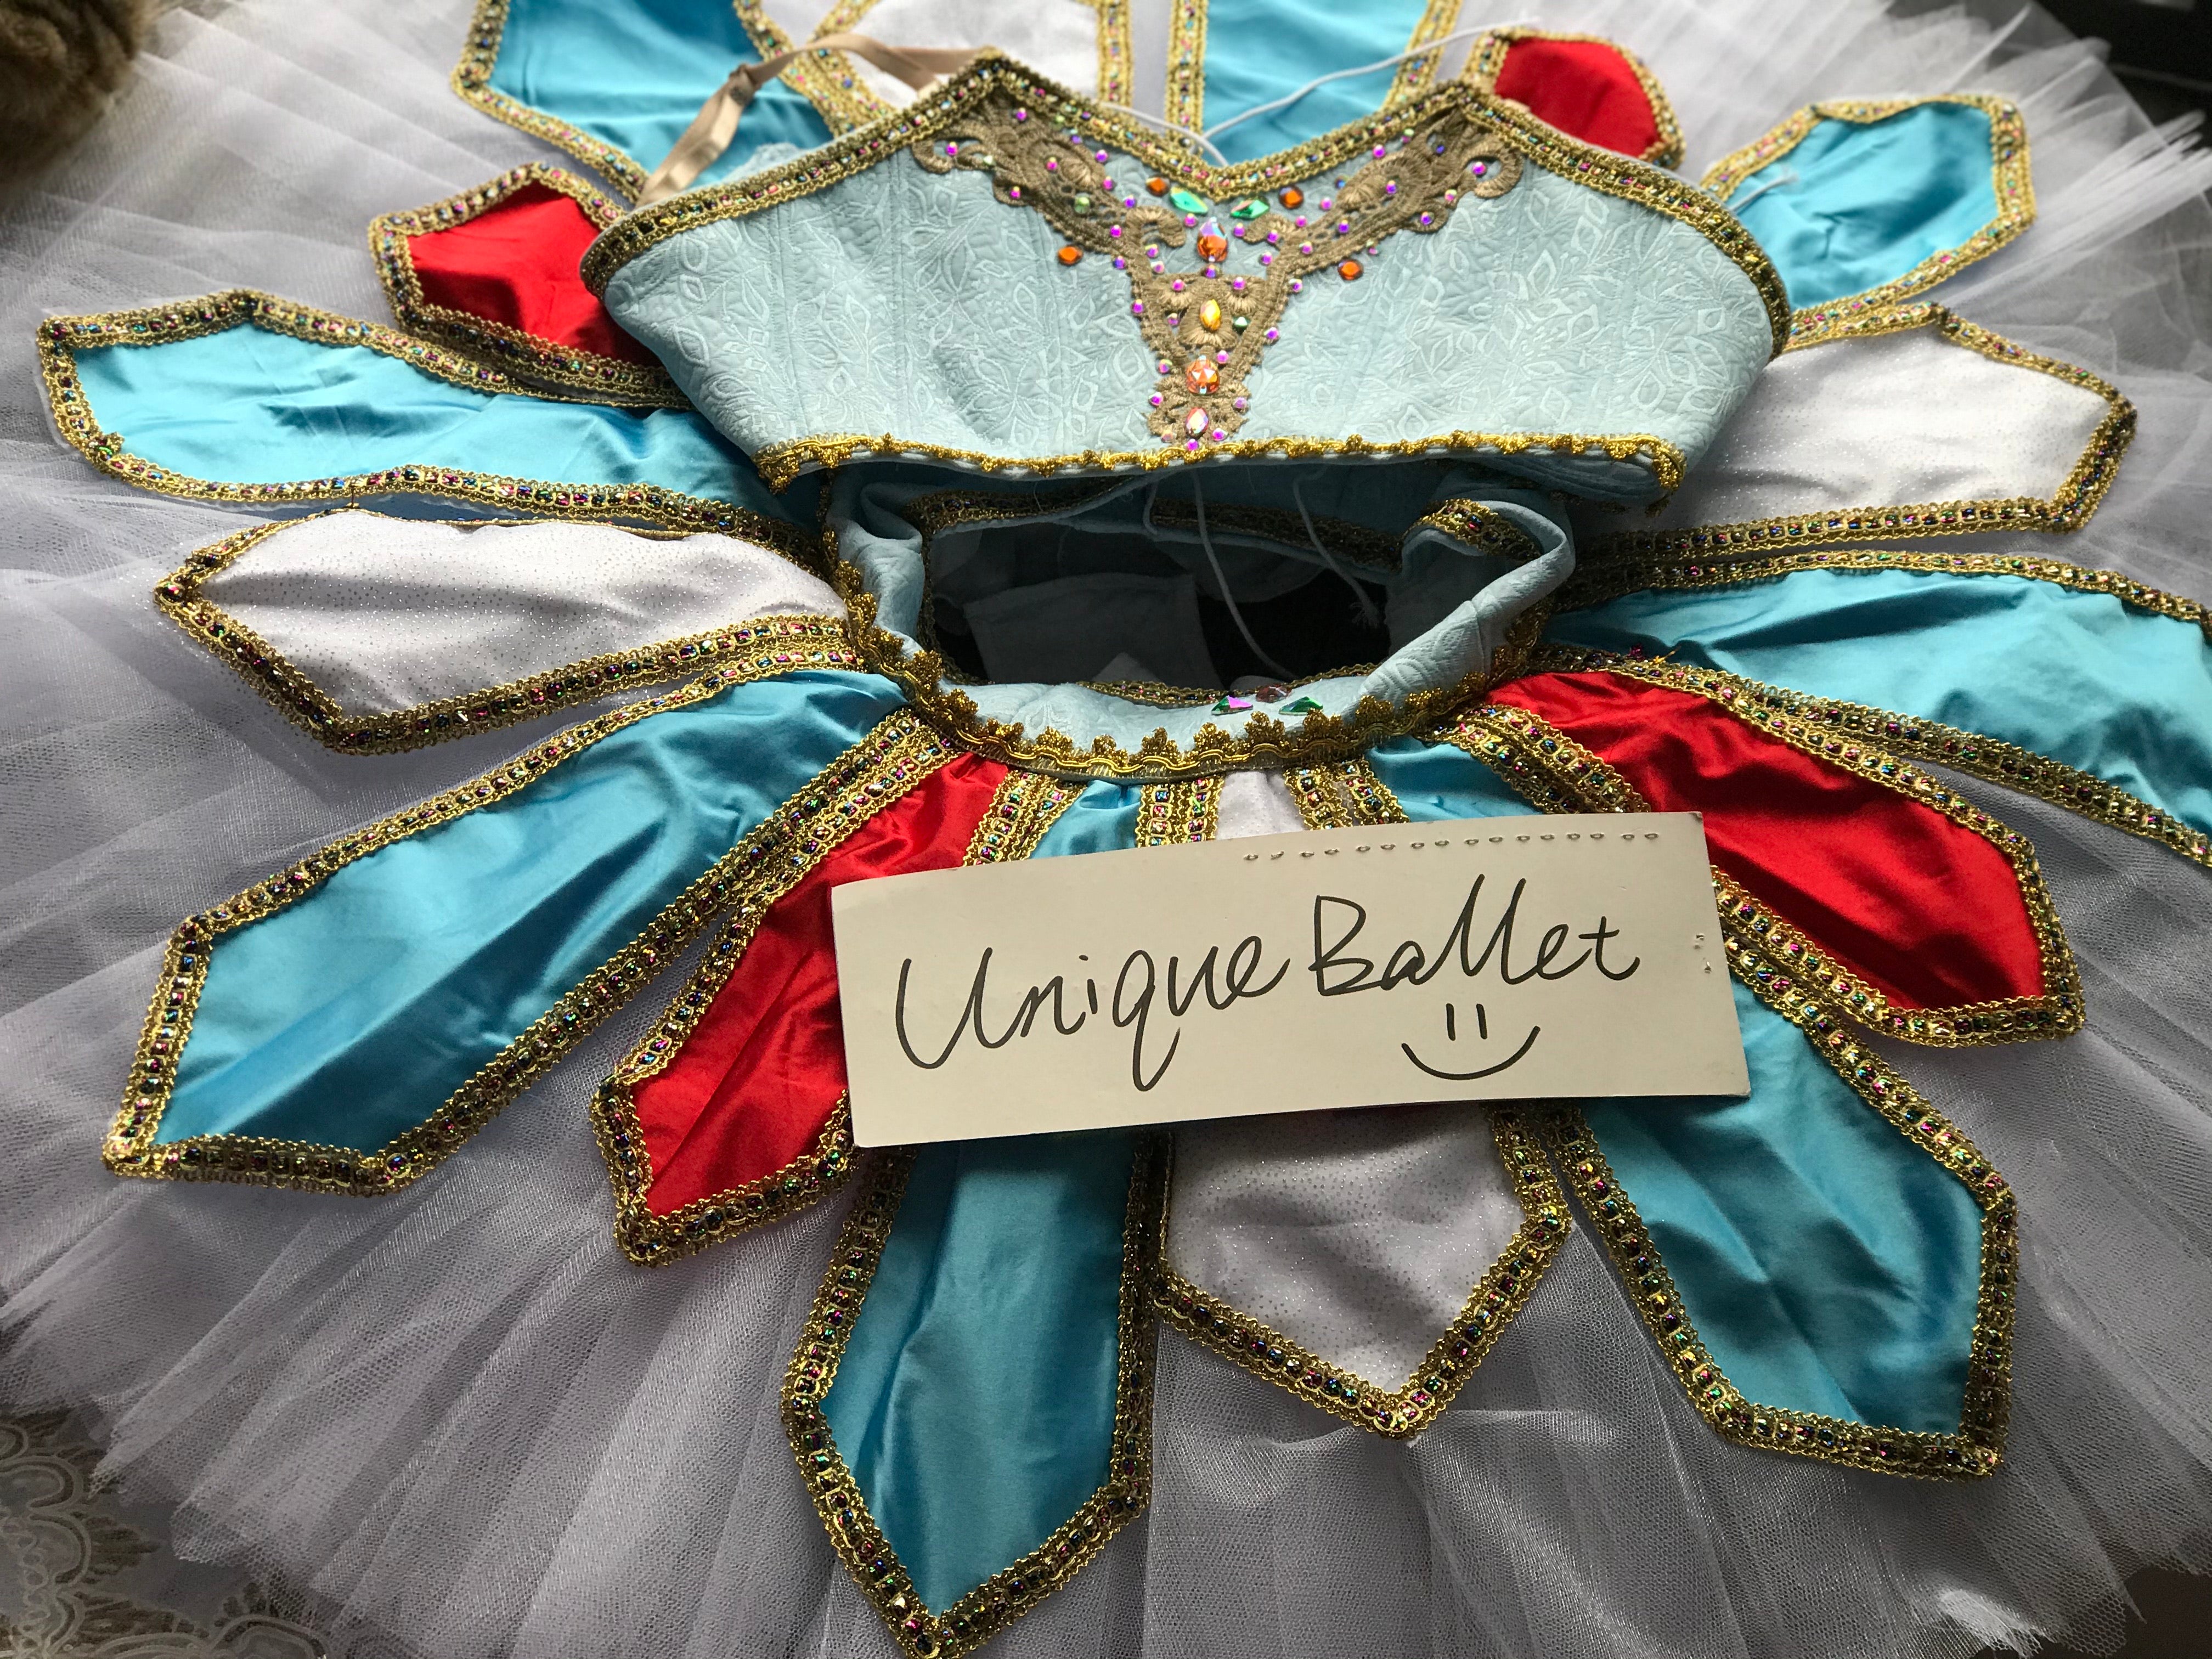 Professional Odalisque Le Corsaire 2 Pieces Light Blue Classic Ballet TuTu Costume With Hooks